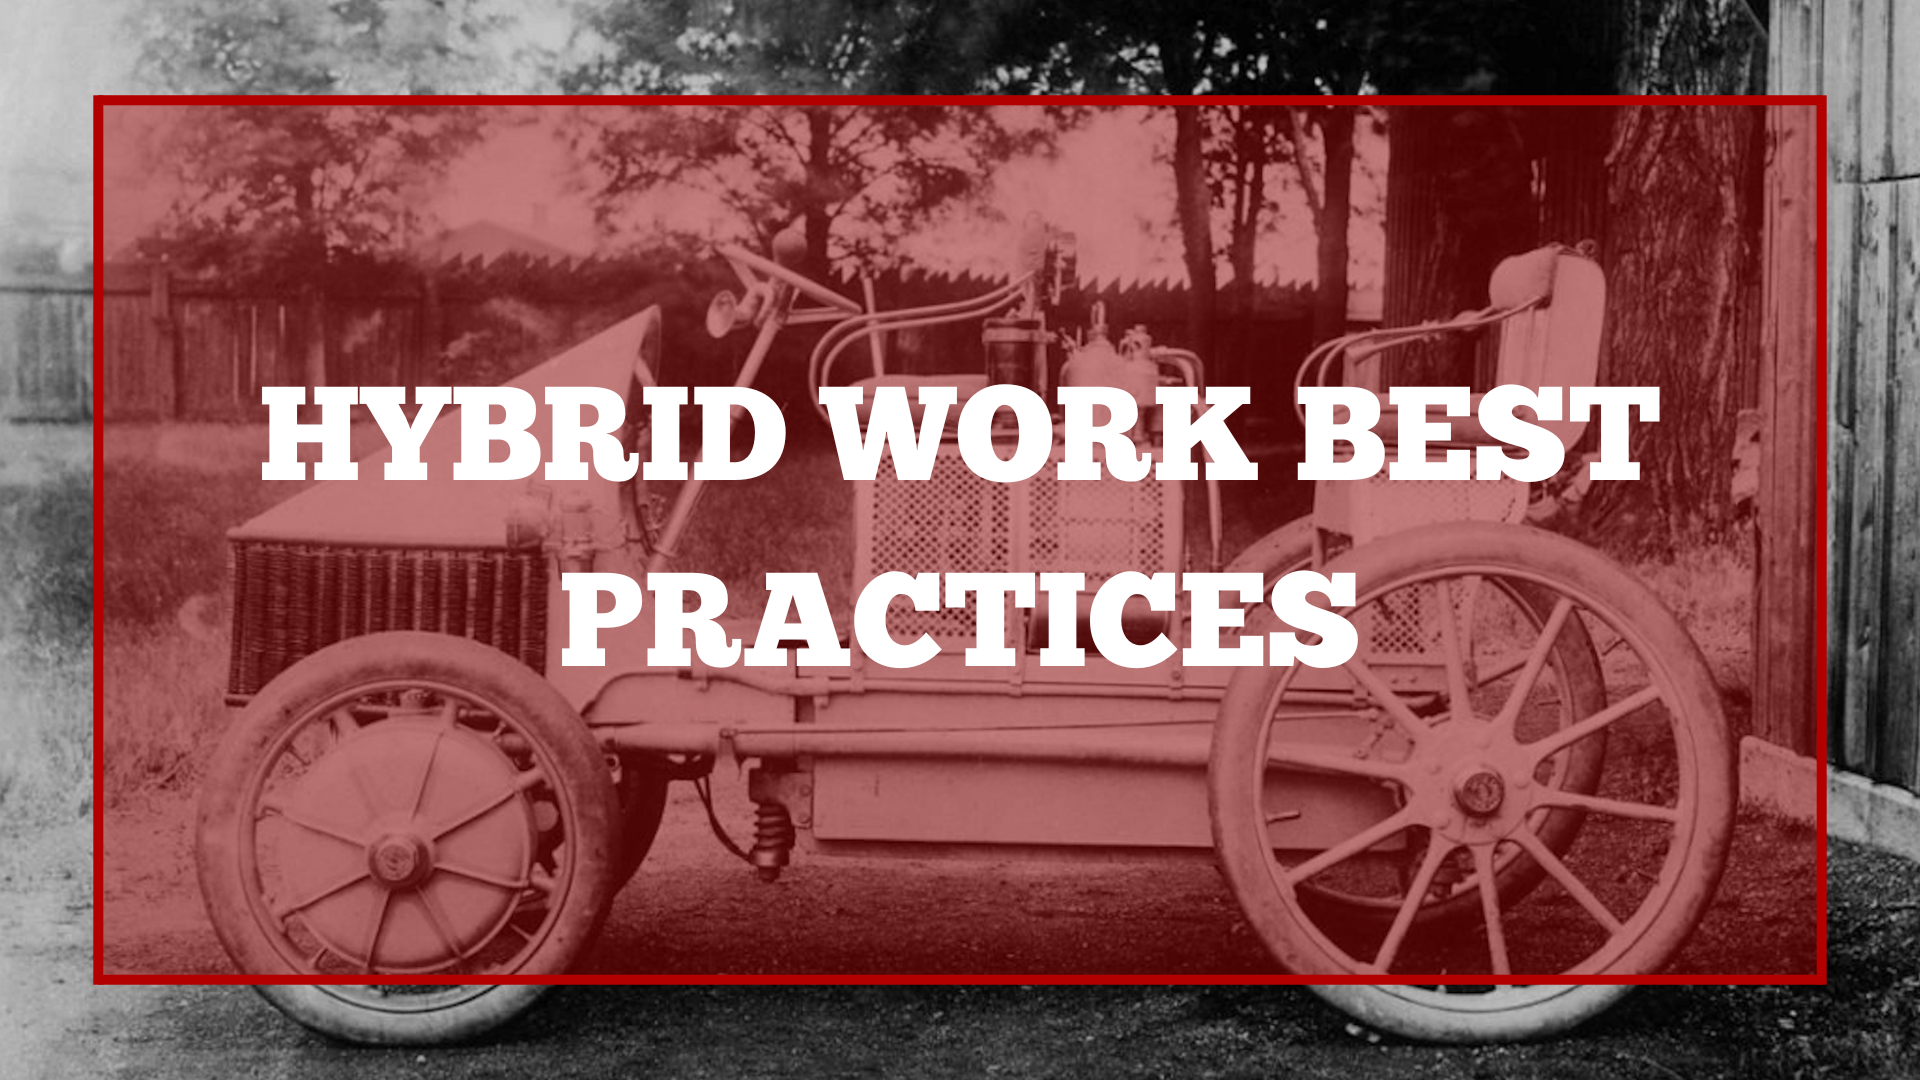 Hybrid work best practices